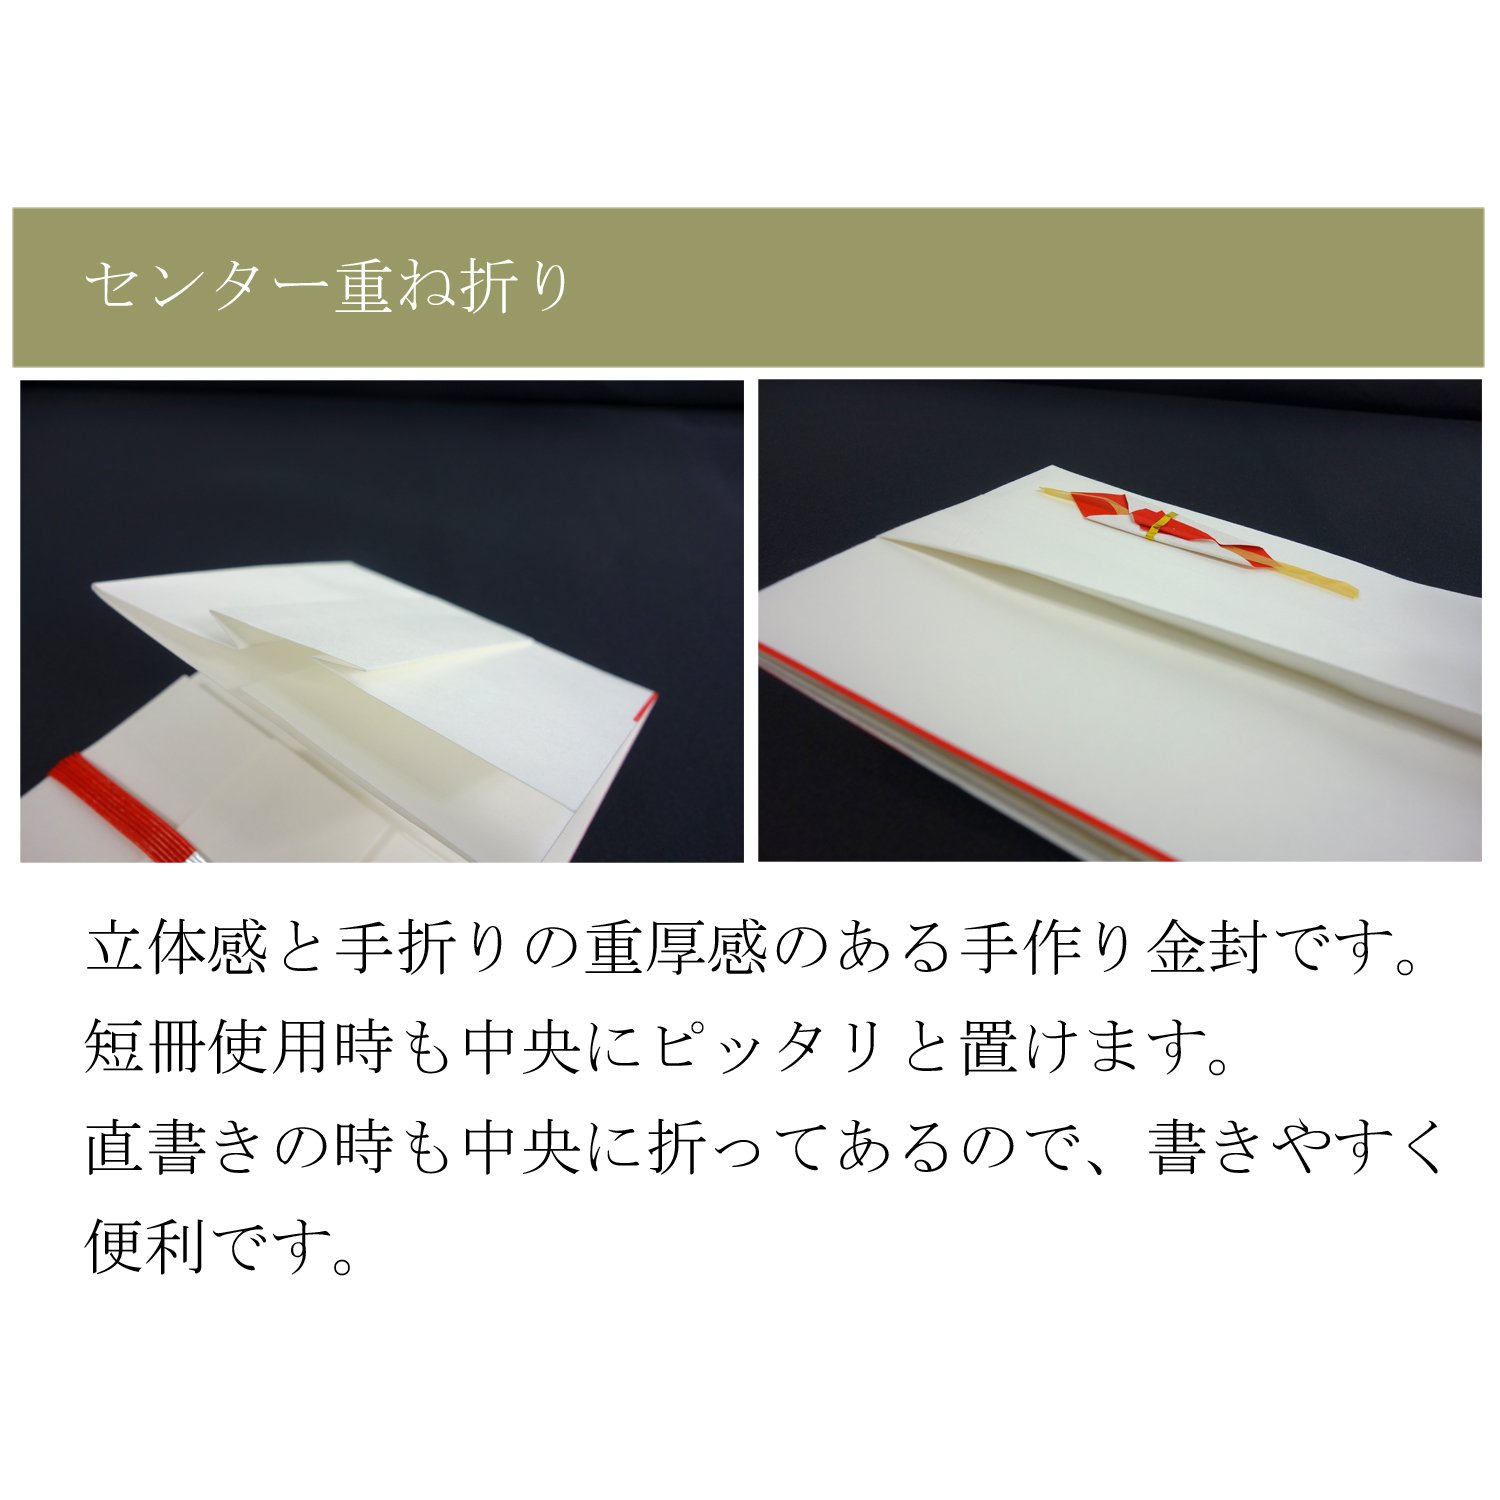  Suzuki бумага . не праздник . пакет золотой . природа цвет чёрный белый 7шт.@ tanzaku входить 15 листов входит Hsu 1252